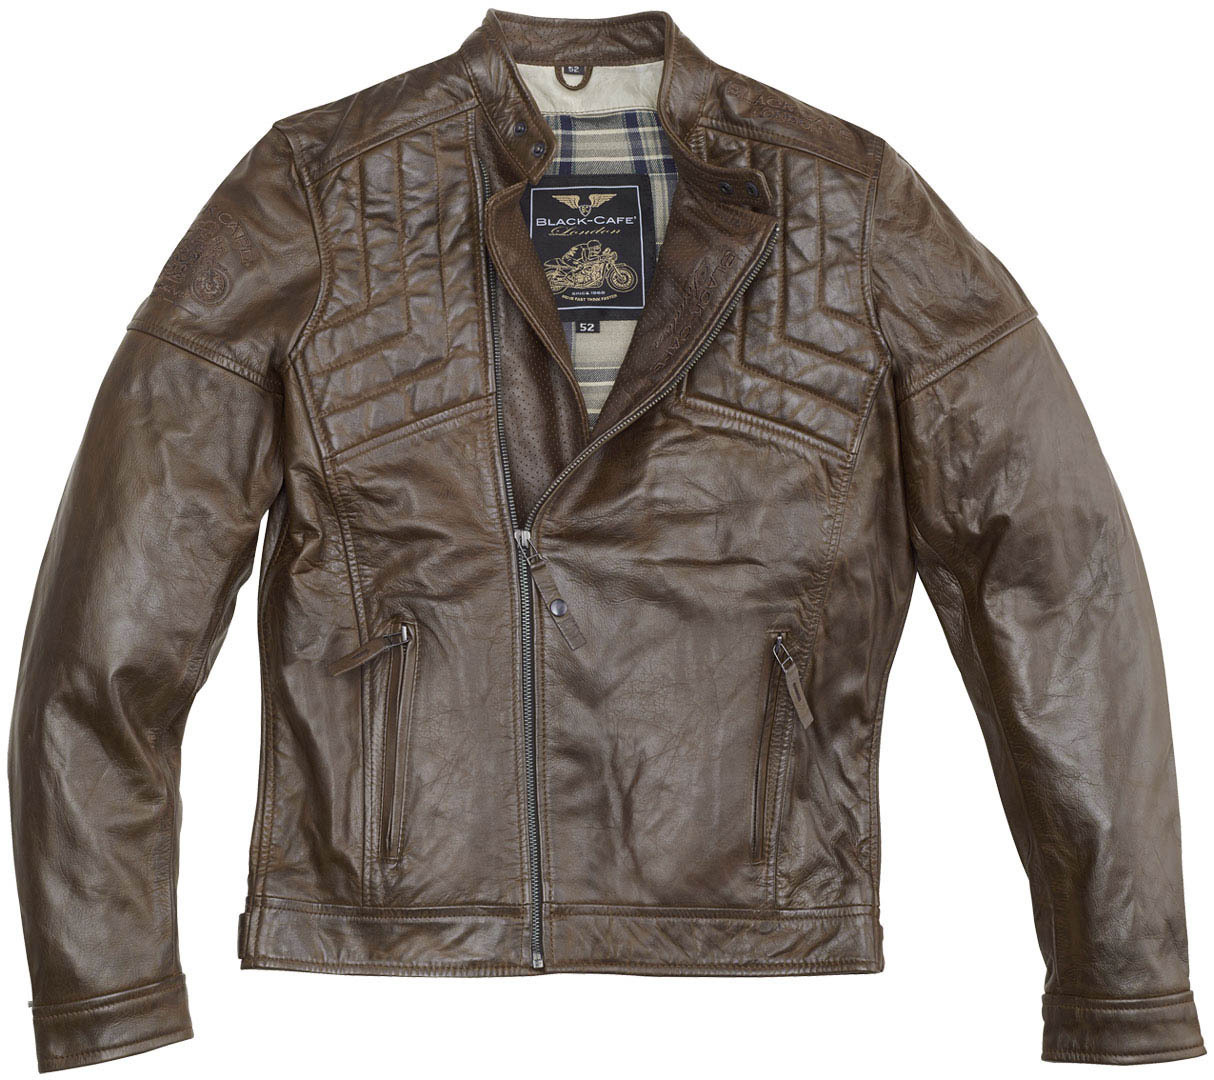 Мотоциклетная кожаная куртка Black-Cafe London Philadelphia с регулируемым воротником, коричневый кожаная куртка размер 56 коричневый